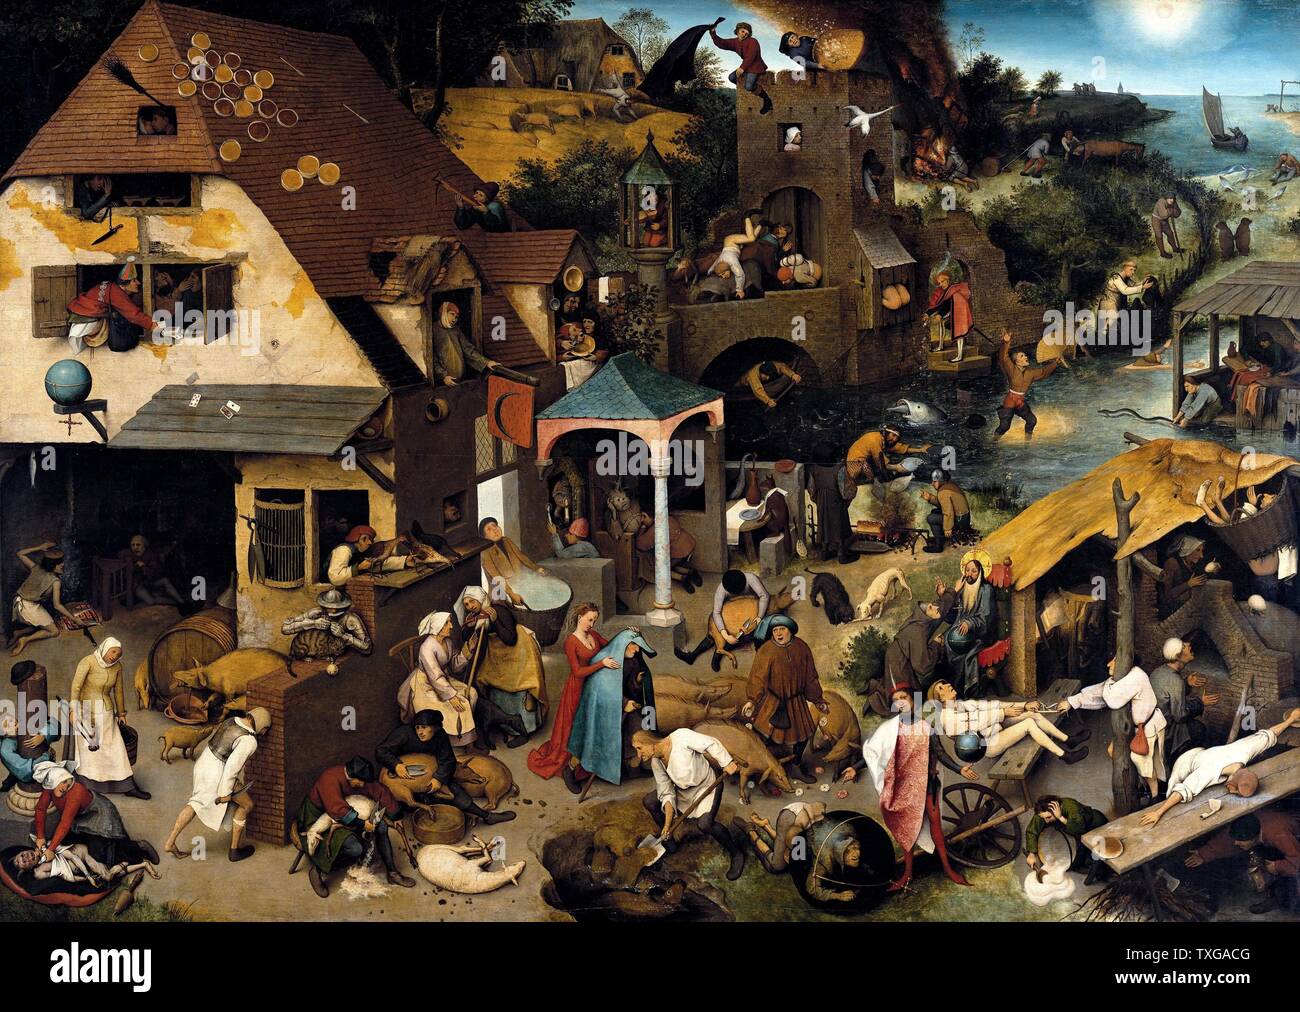 Pieter Bruegel l'ancien école flamande Proverbes Russisch 1559 Huile sur panneau de bois (117 x 163 cm Gemäldegalerie, Berlin) Banque D'Images